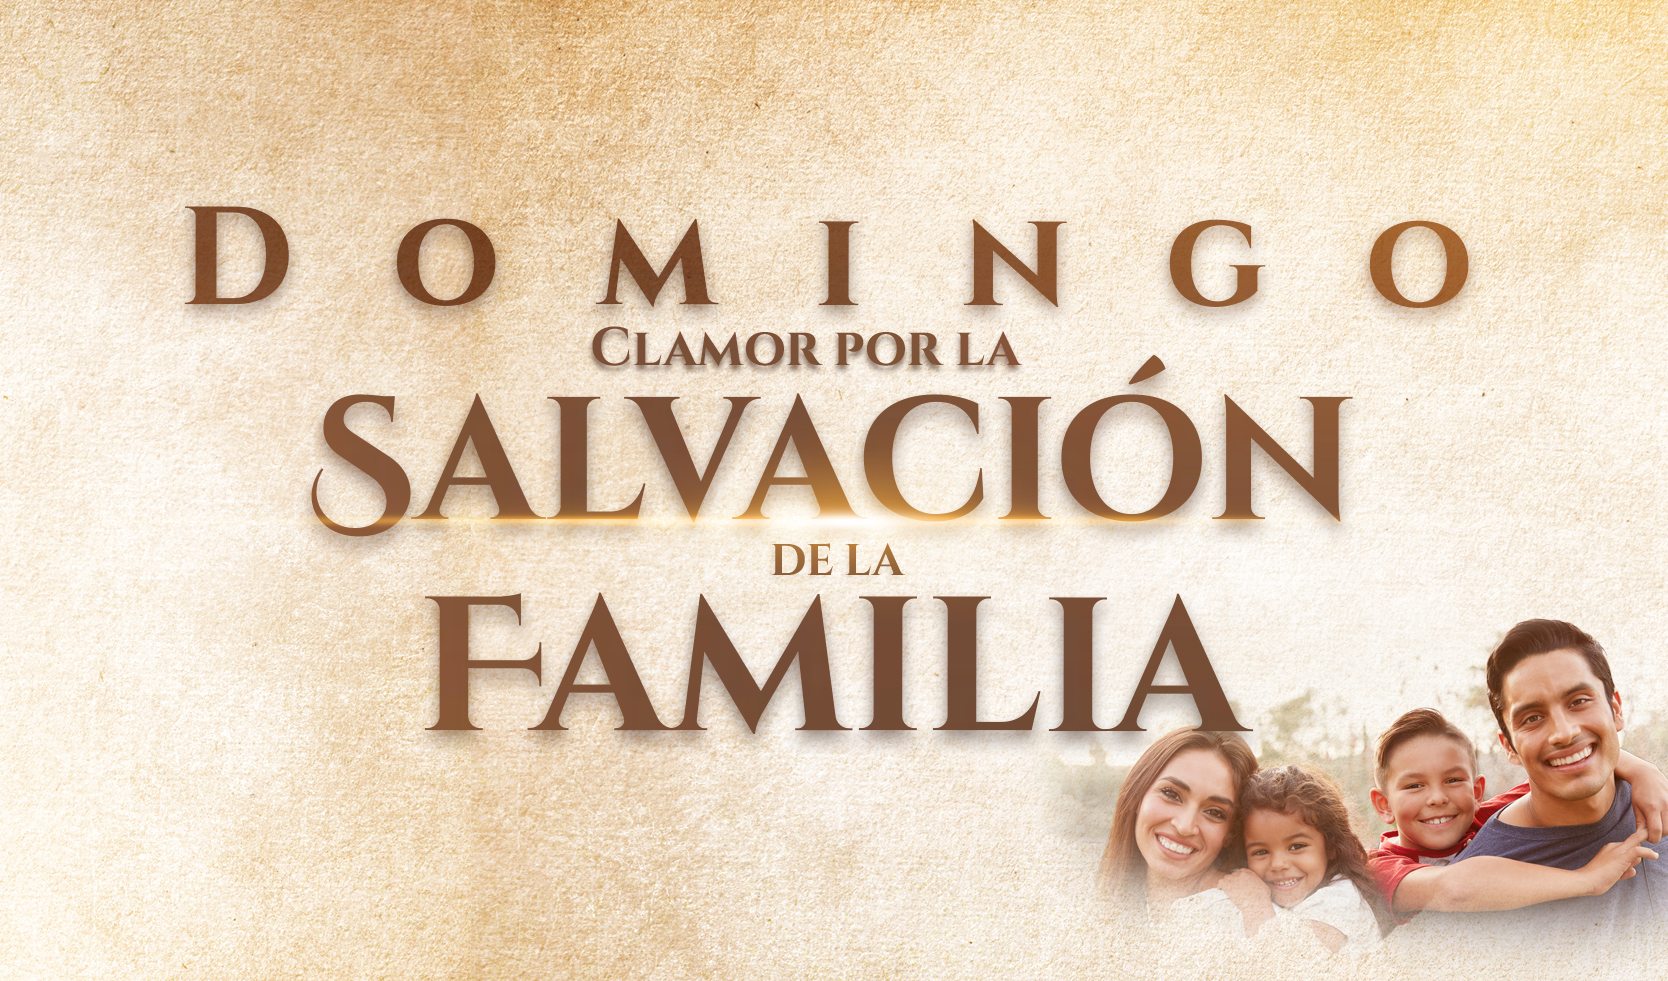 Domingo: Clamor por la Salvación de la Familia